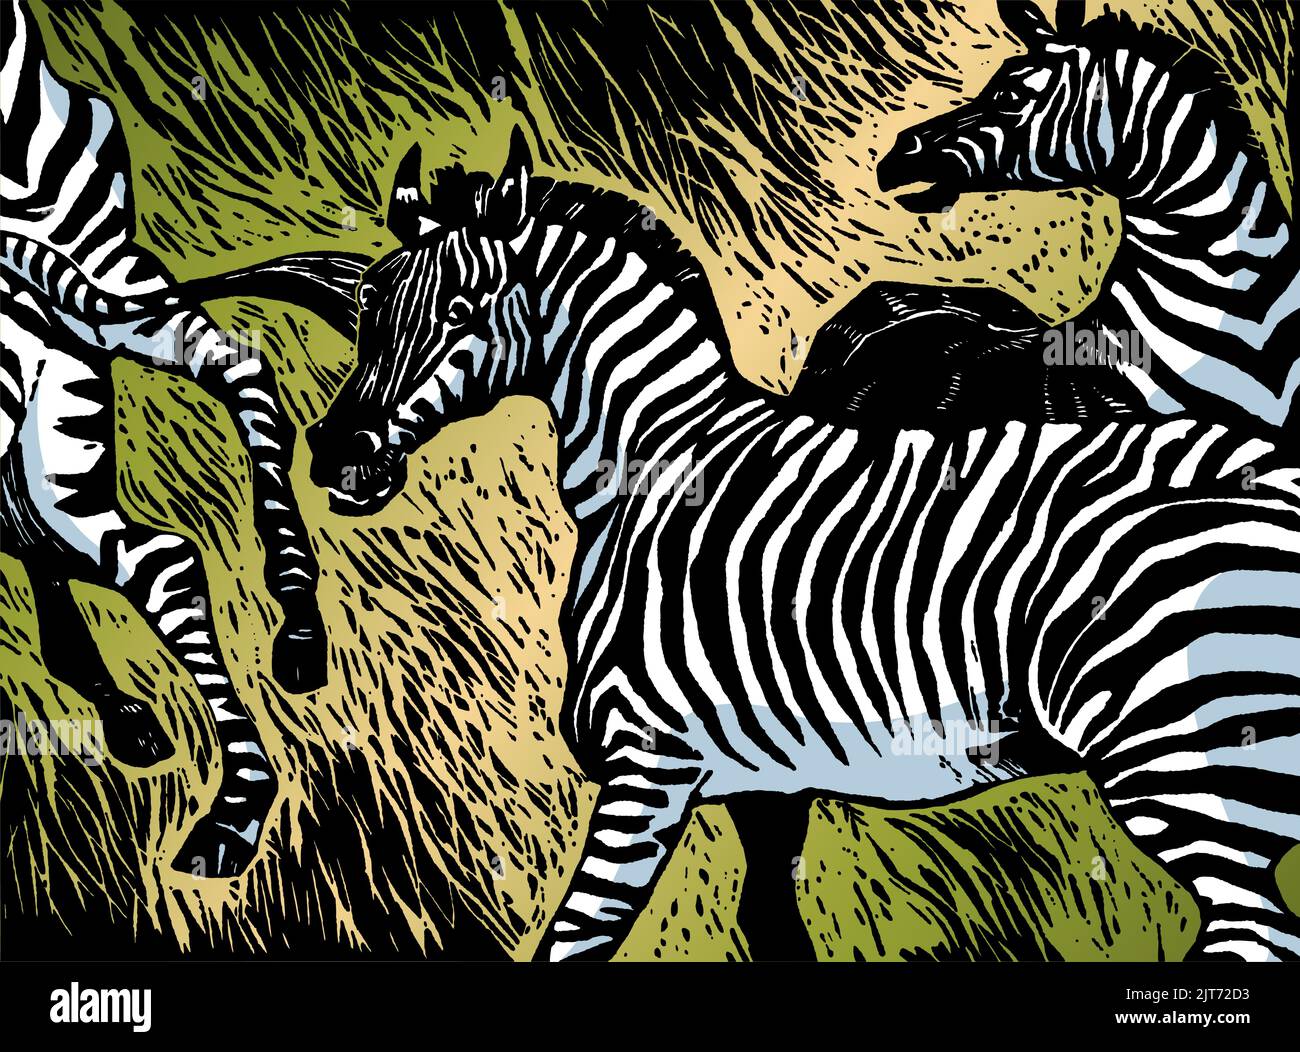 Illustrazione vettoriale di stile woodcut di una mandria di zebra selvatica. Illustrazione Vettoriale